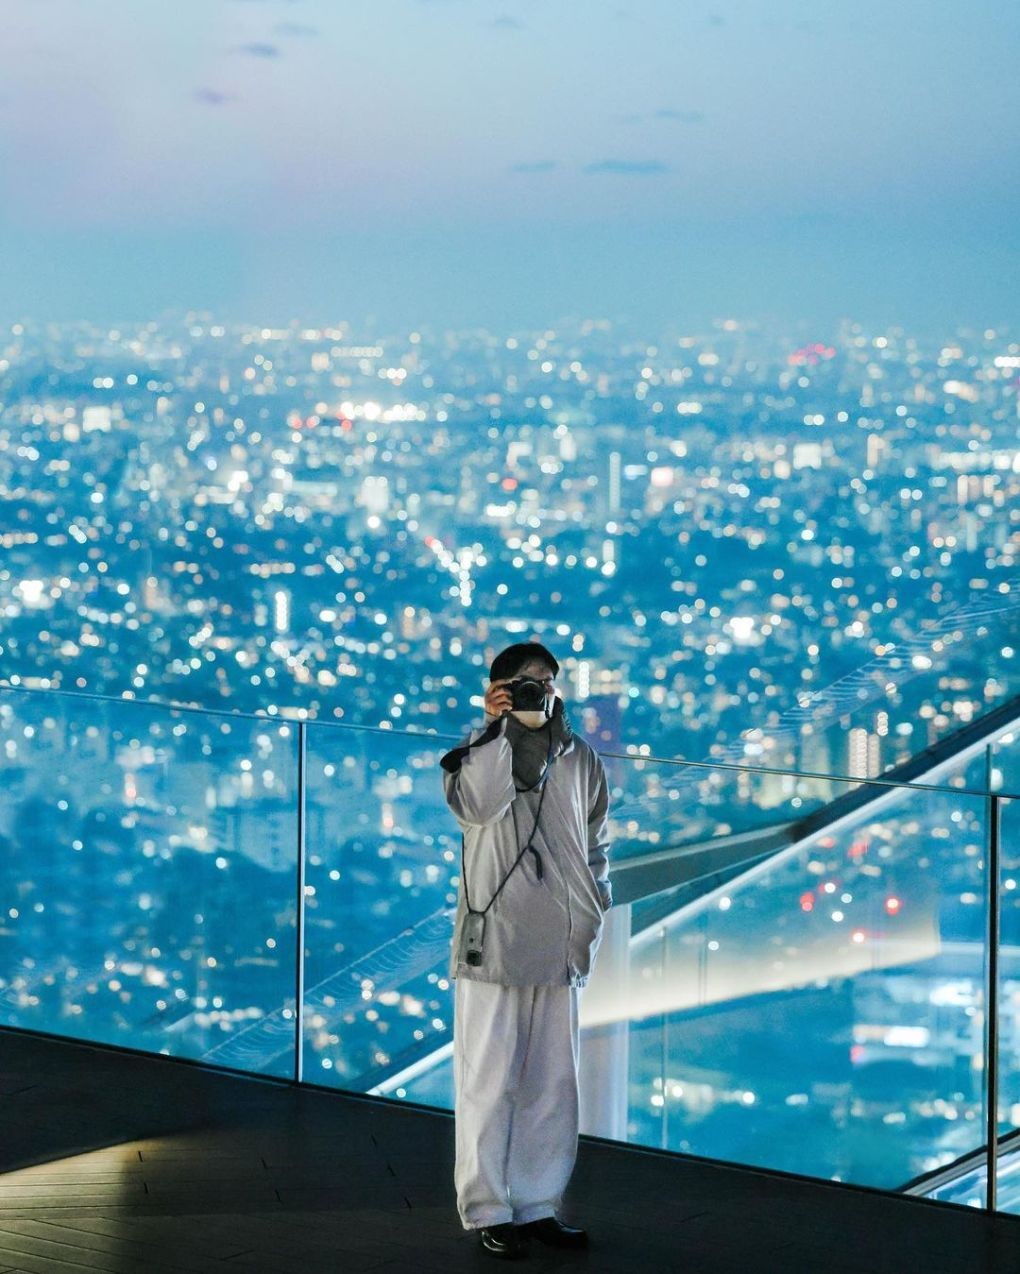 Đêm xuống, 'đại đô thị' Tokyo lung linh dưới ánh đèn đường, từ các tòa nhà, giống như hàng triệu vì sao lấp lánh. Du khách còn có cơ hội ngắm nhìn màn trình diễn ánh sáng từ các tòa nhà cao tầng. Đài quan sát mở cửa gần như cả ngày, từ 6h sáng đến 11h đêm, để du khách có thể tham quan vào bất kỳ thời điểm nào theo sở thích. Ảnh: Instagram y9uuuuuu